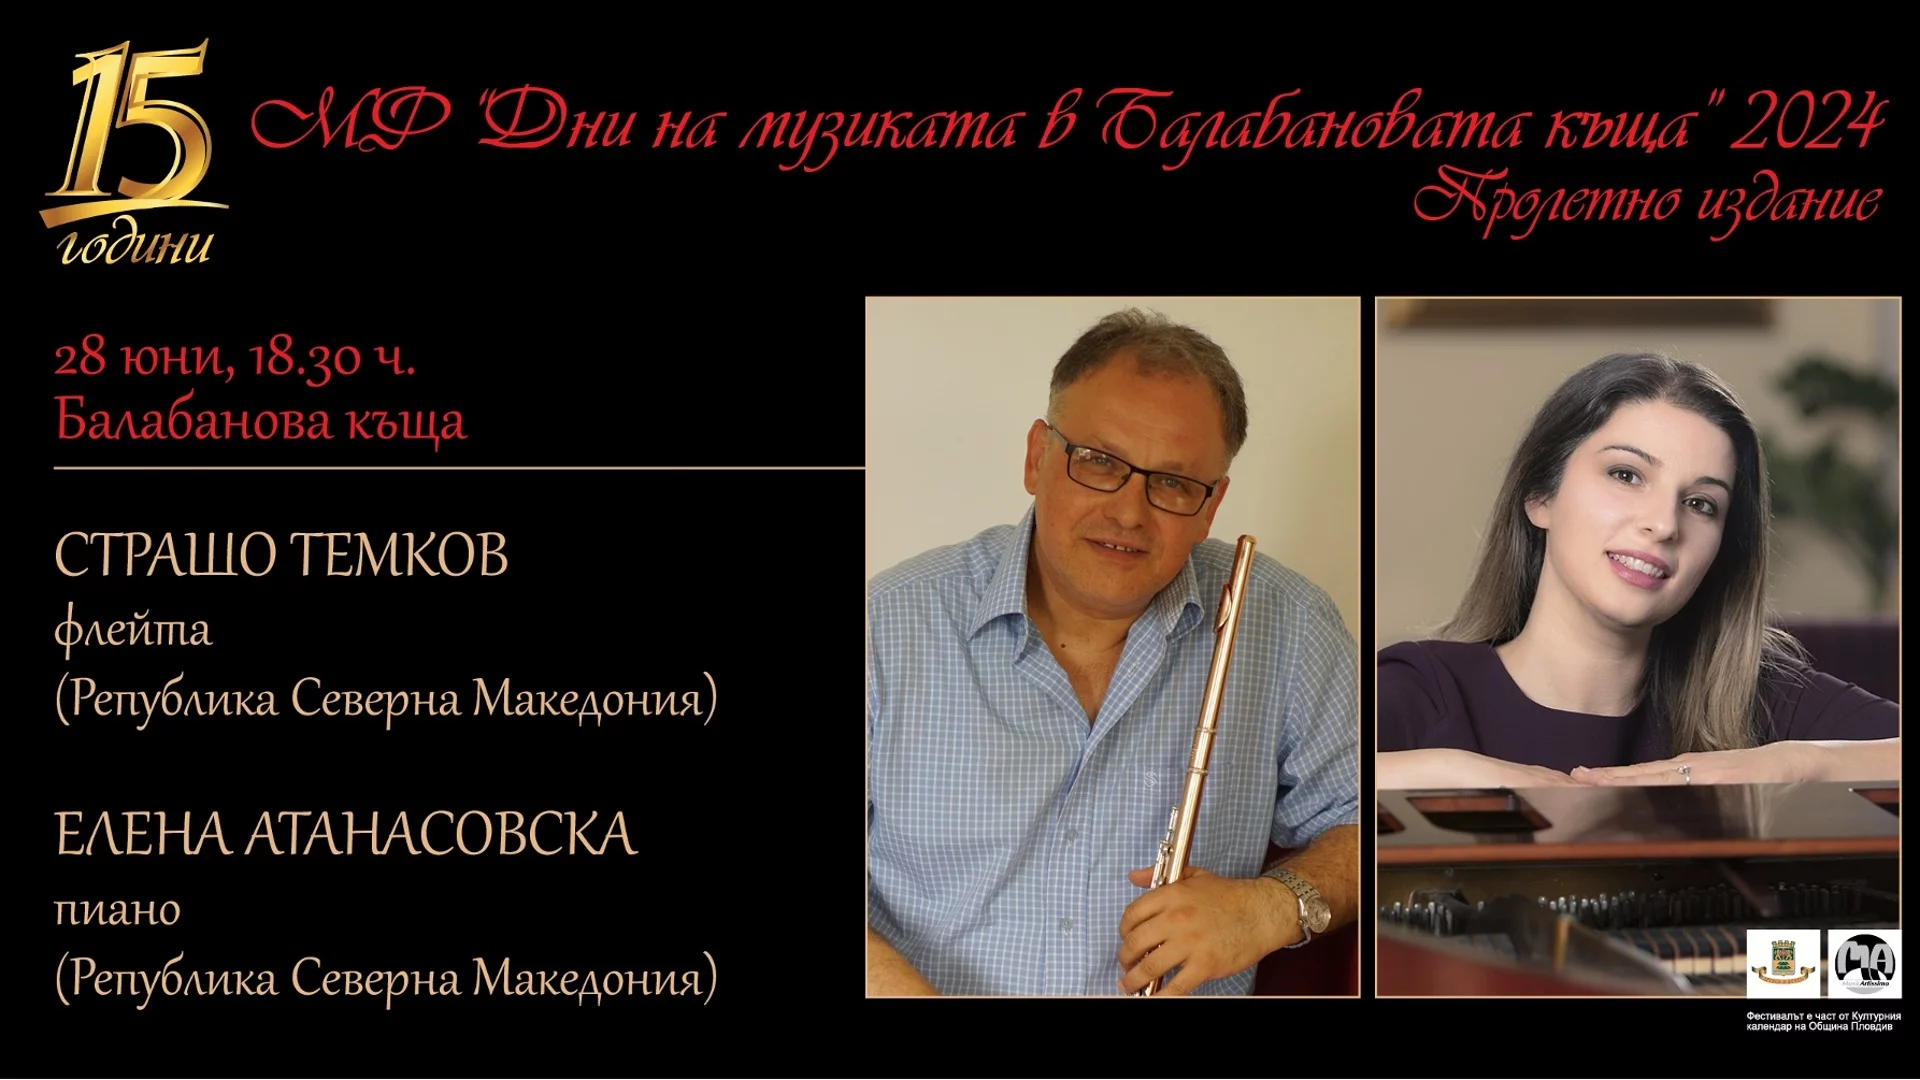 Фестивалът “Дни на музиката в Балабановата къща” в Пловдив представя три концерта